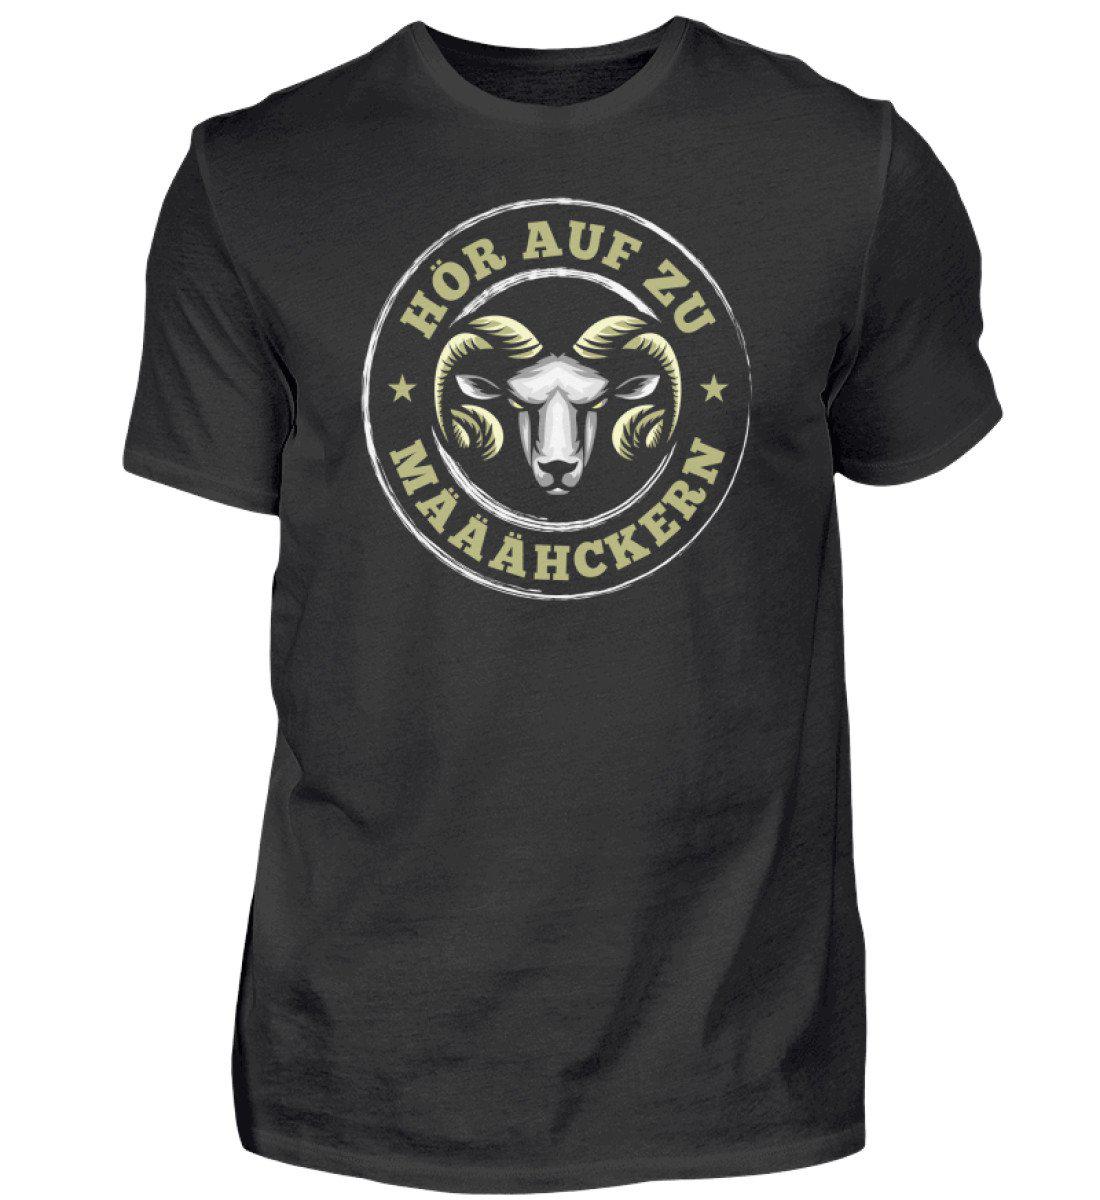 Hör auf zu määähckern · Herren T-Shirt-Herren Basic T-Shirt-Black-S-Agrarstarz